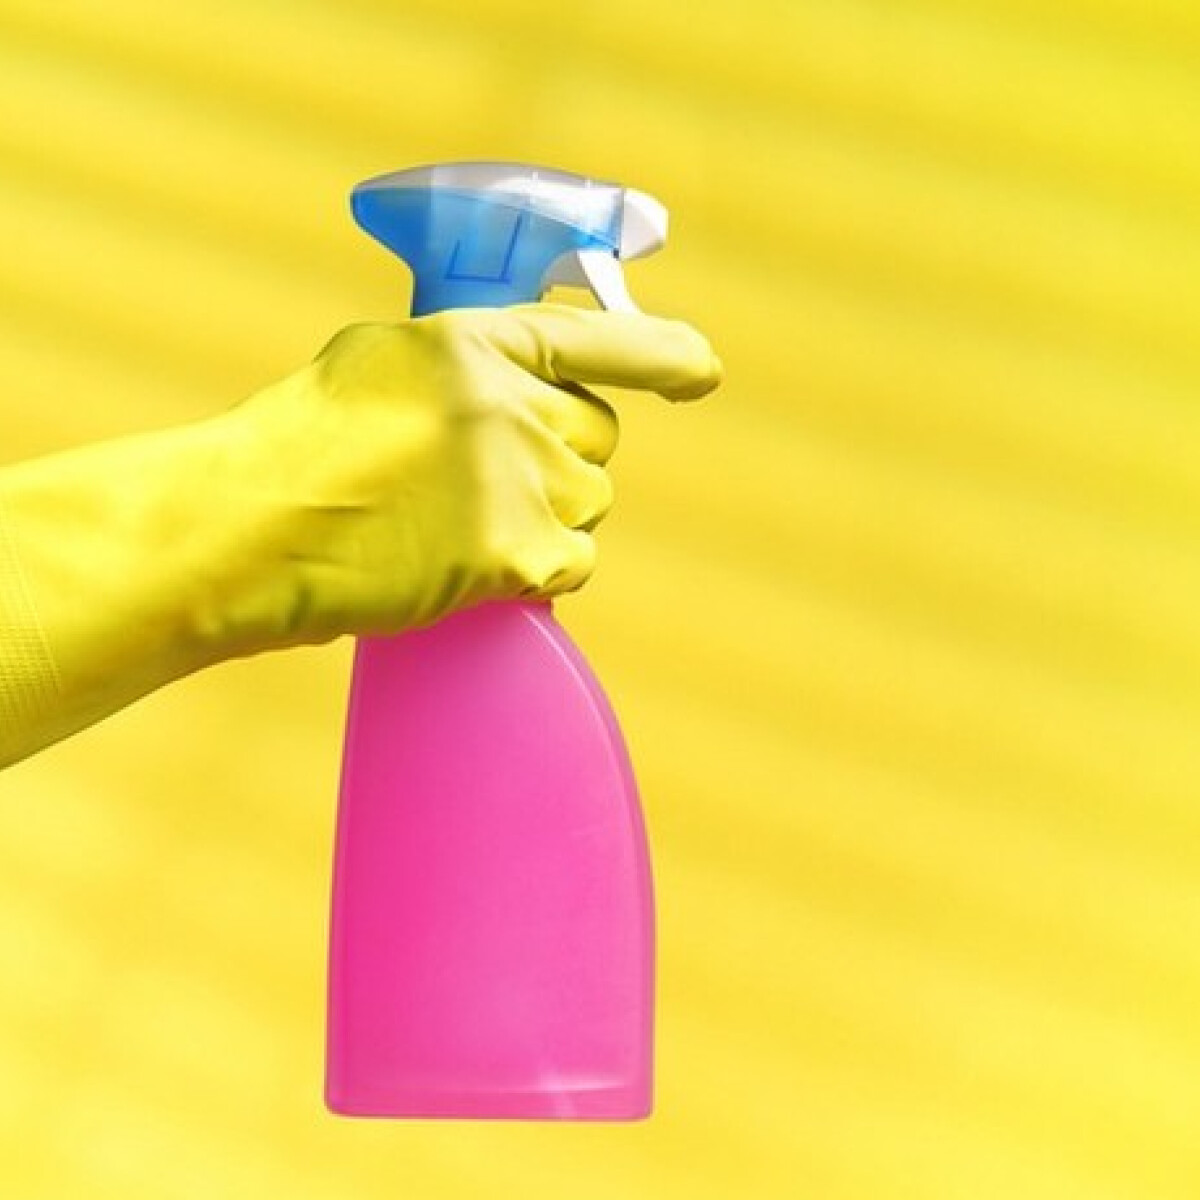 Készíts házi, vírusellenes felülettisztító sprayt : na de mely hatóanyagokkal működik?